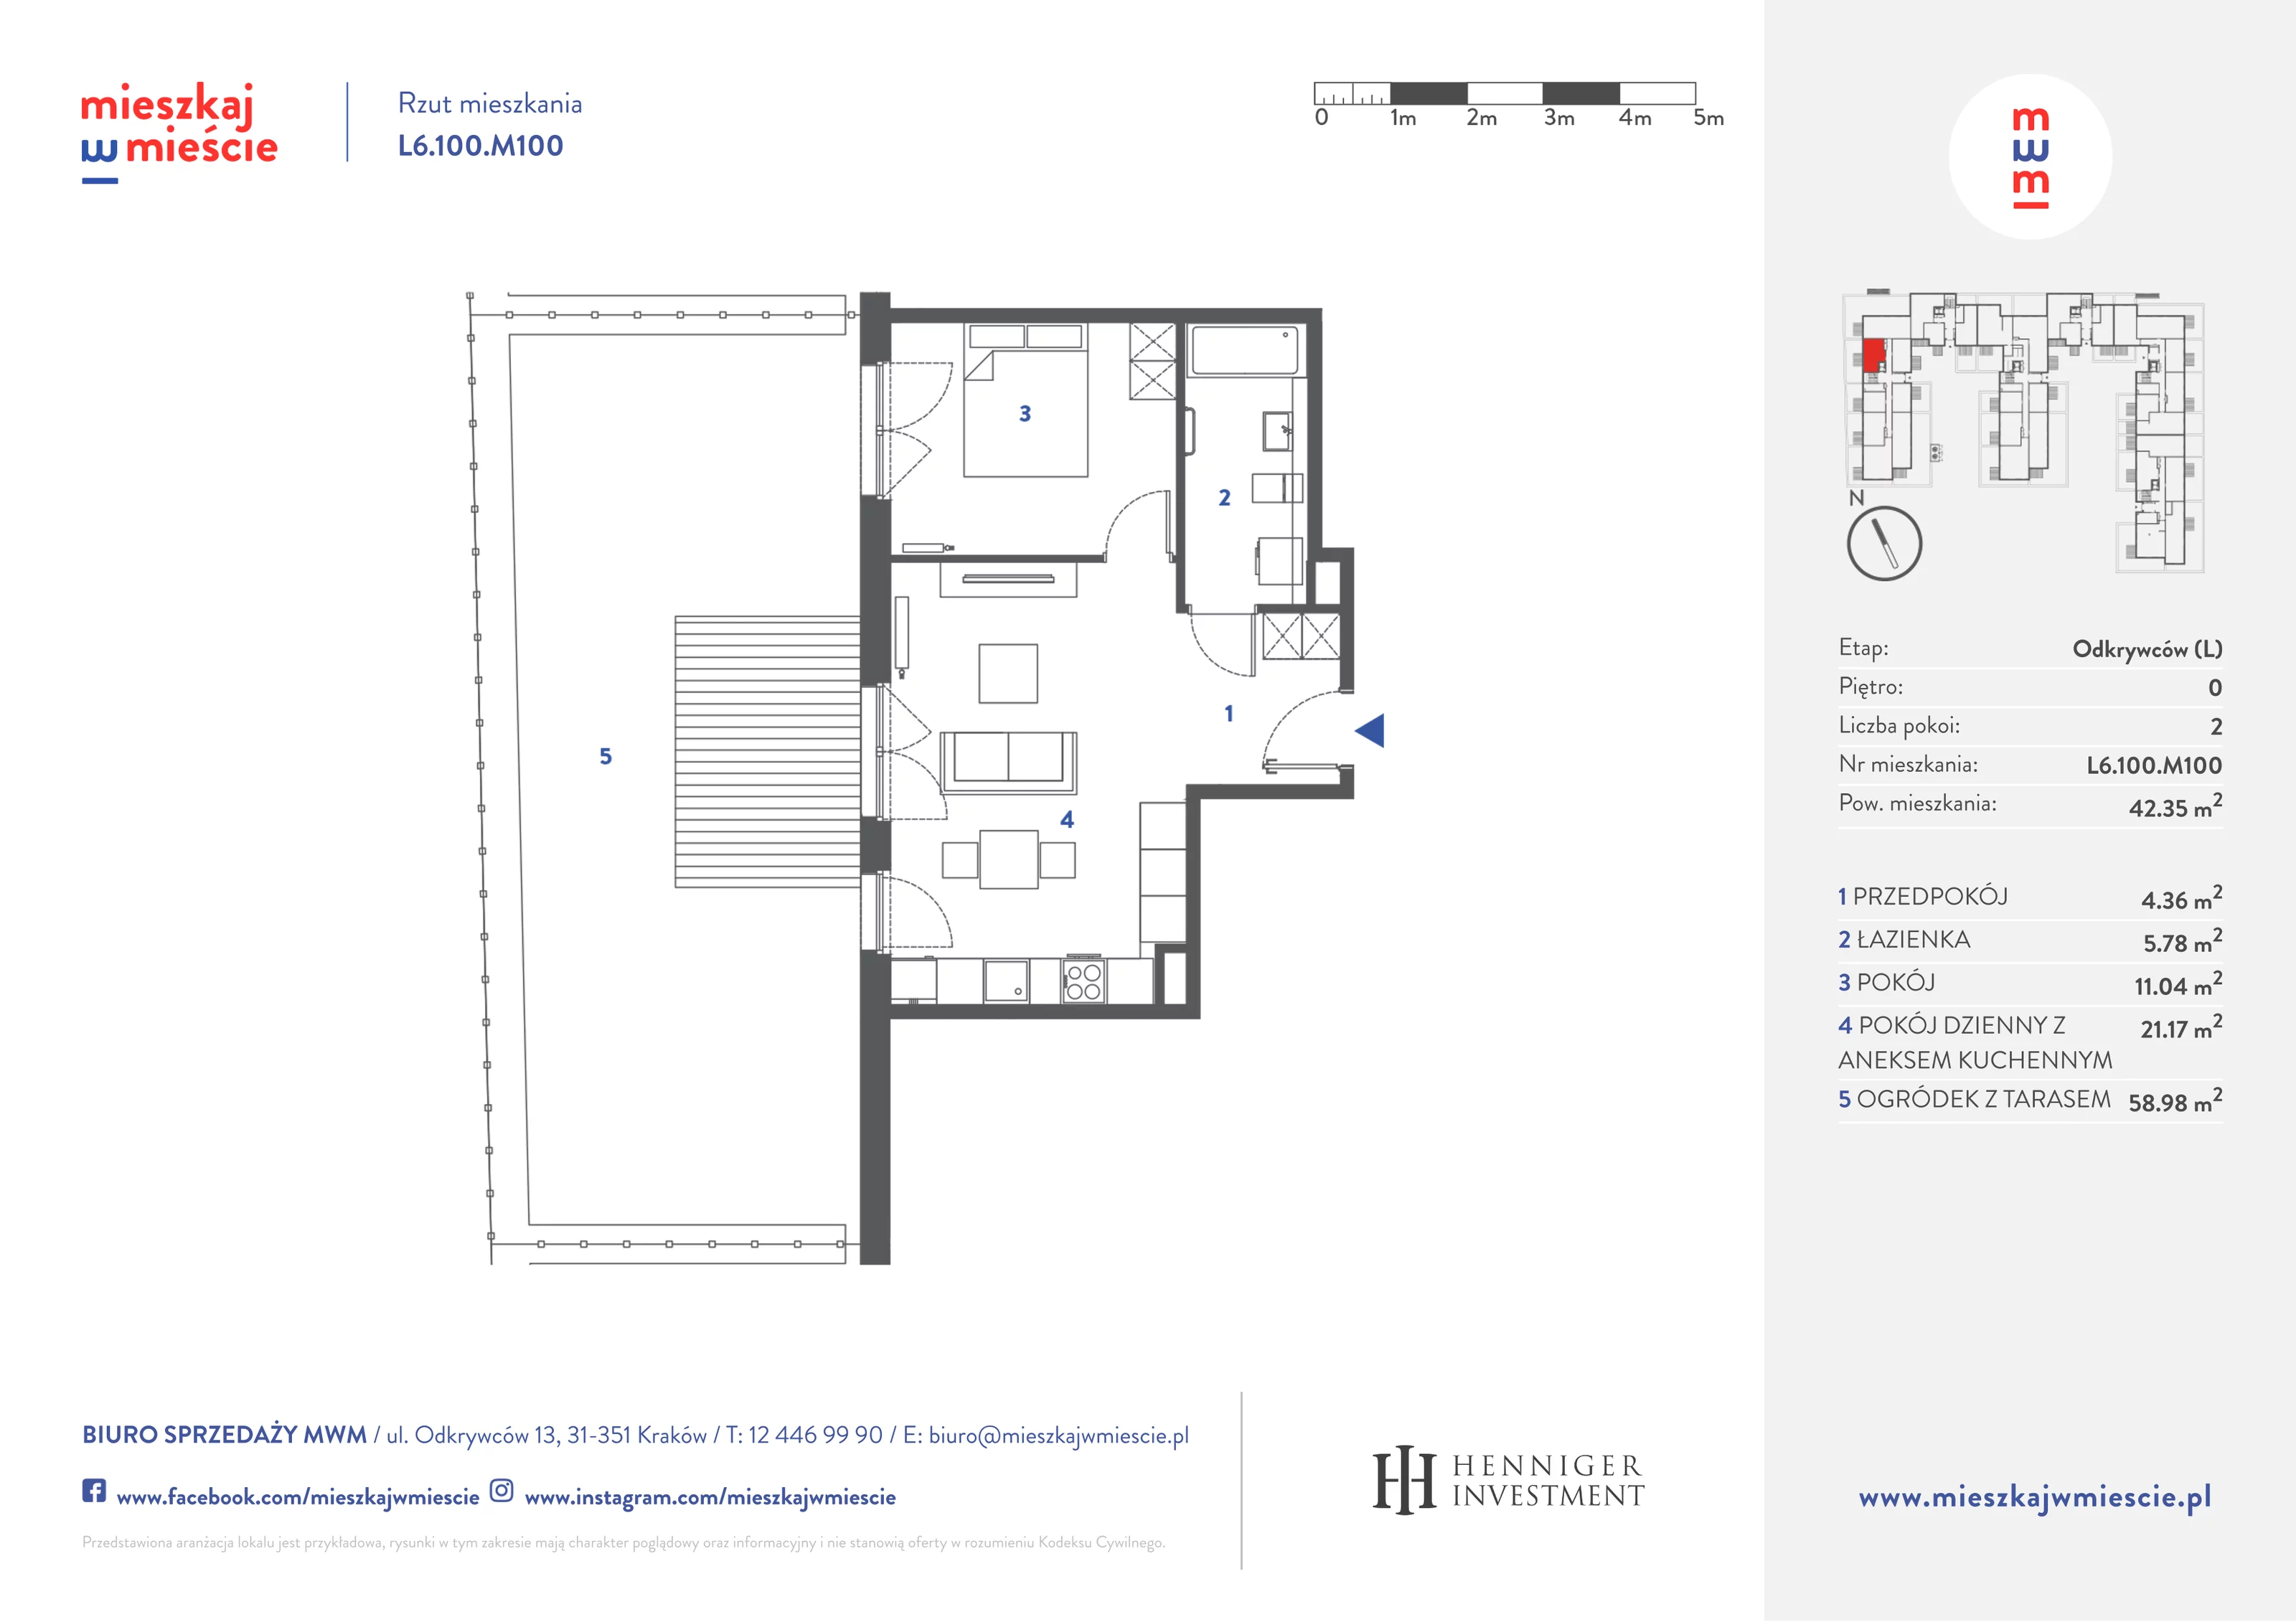 Mieszkanie 42,53 m², parter, oferta nr L6.100.M100, Mieszkaj w Mieście - Odkrywców L, Kraków, Bronowice, ul. Wizjonerów